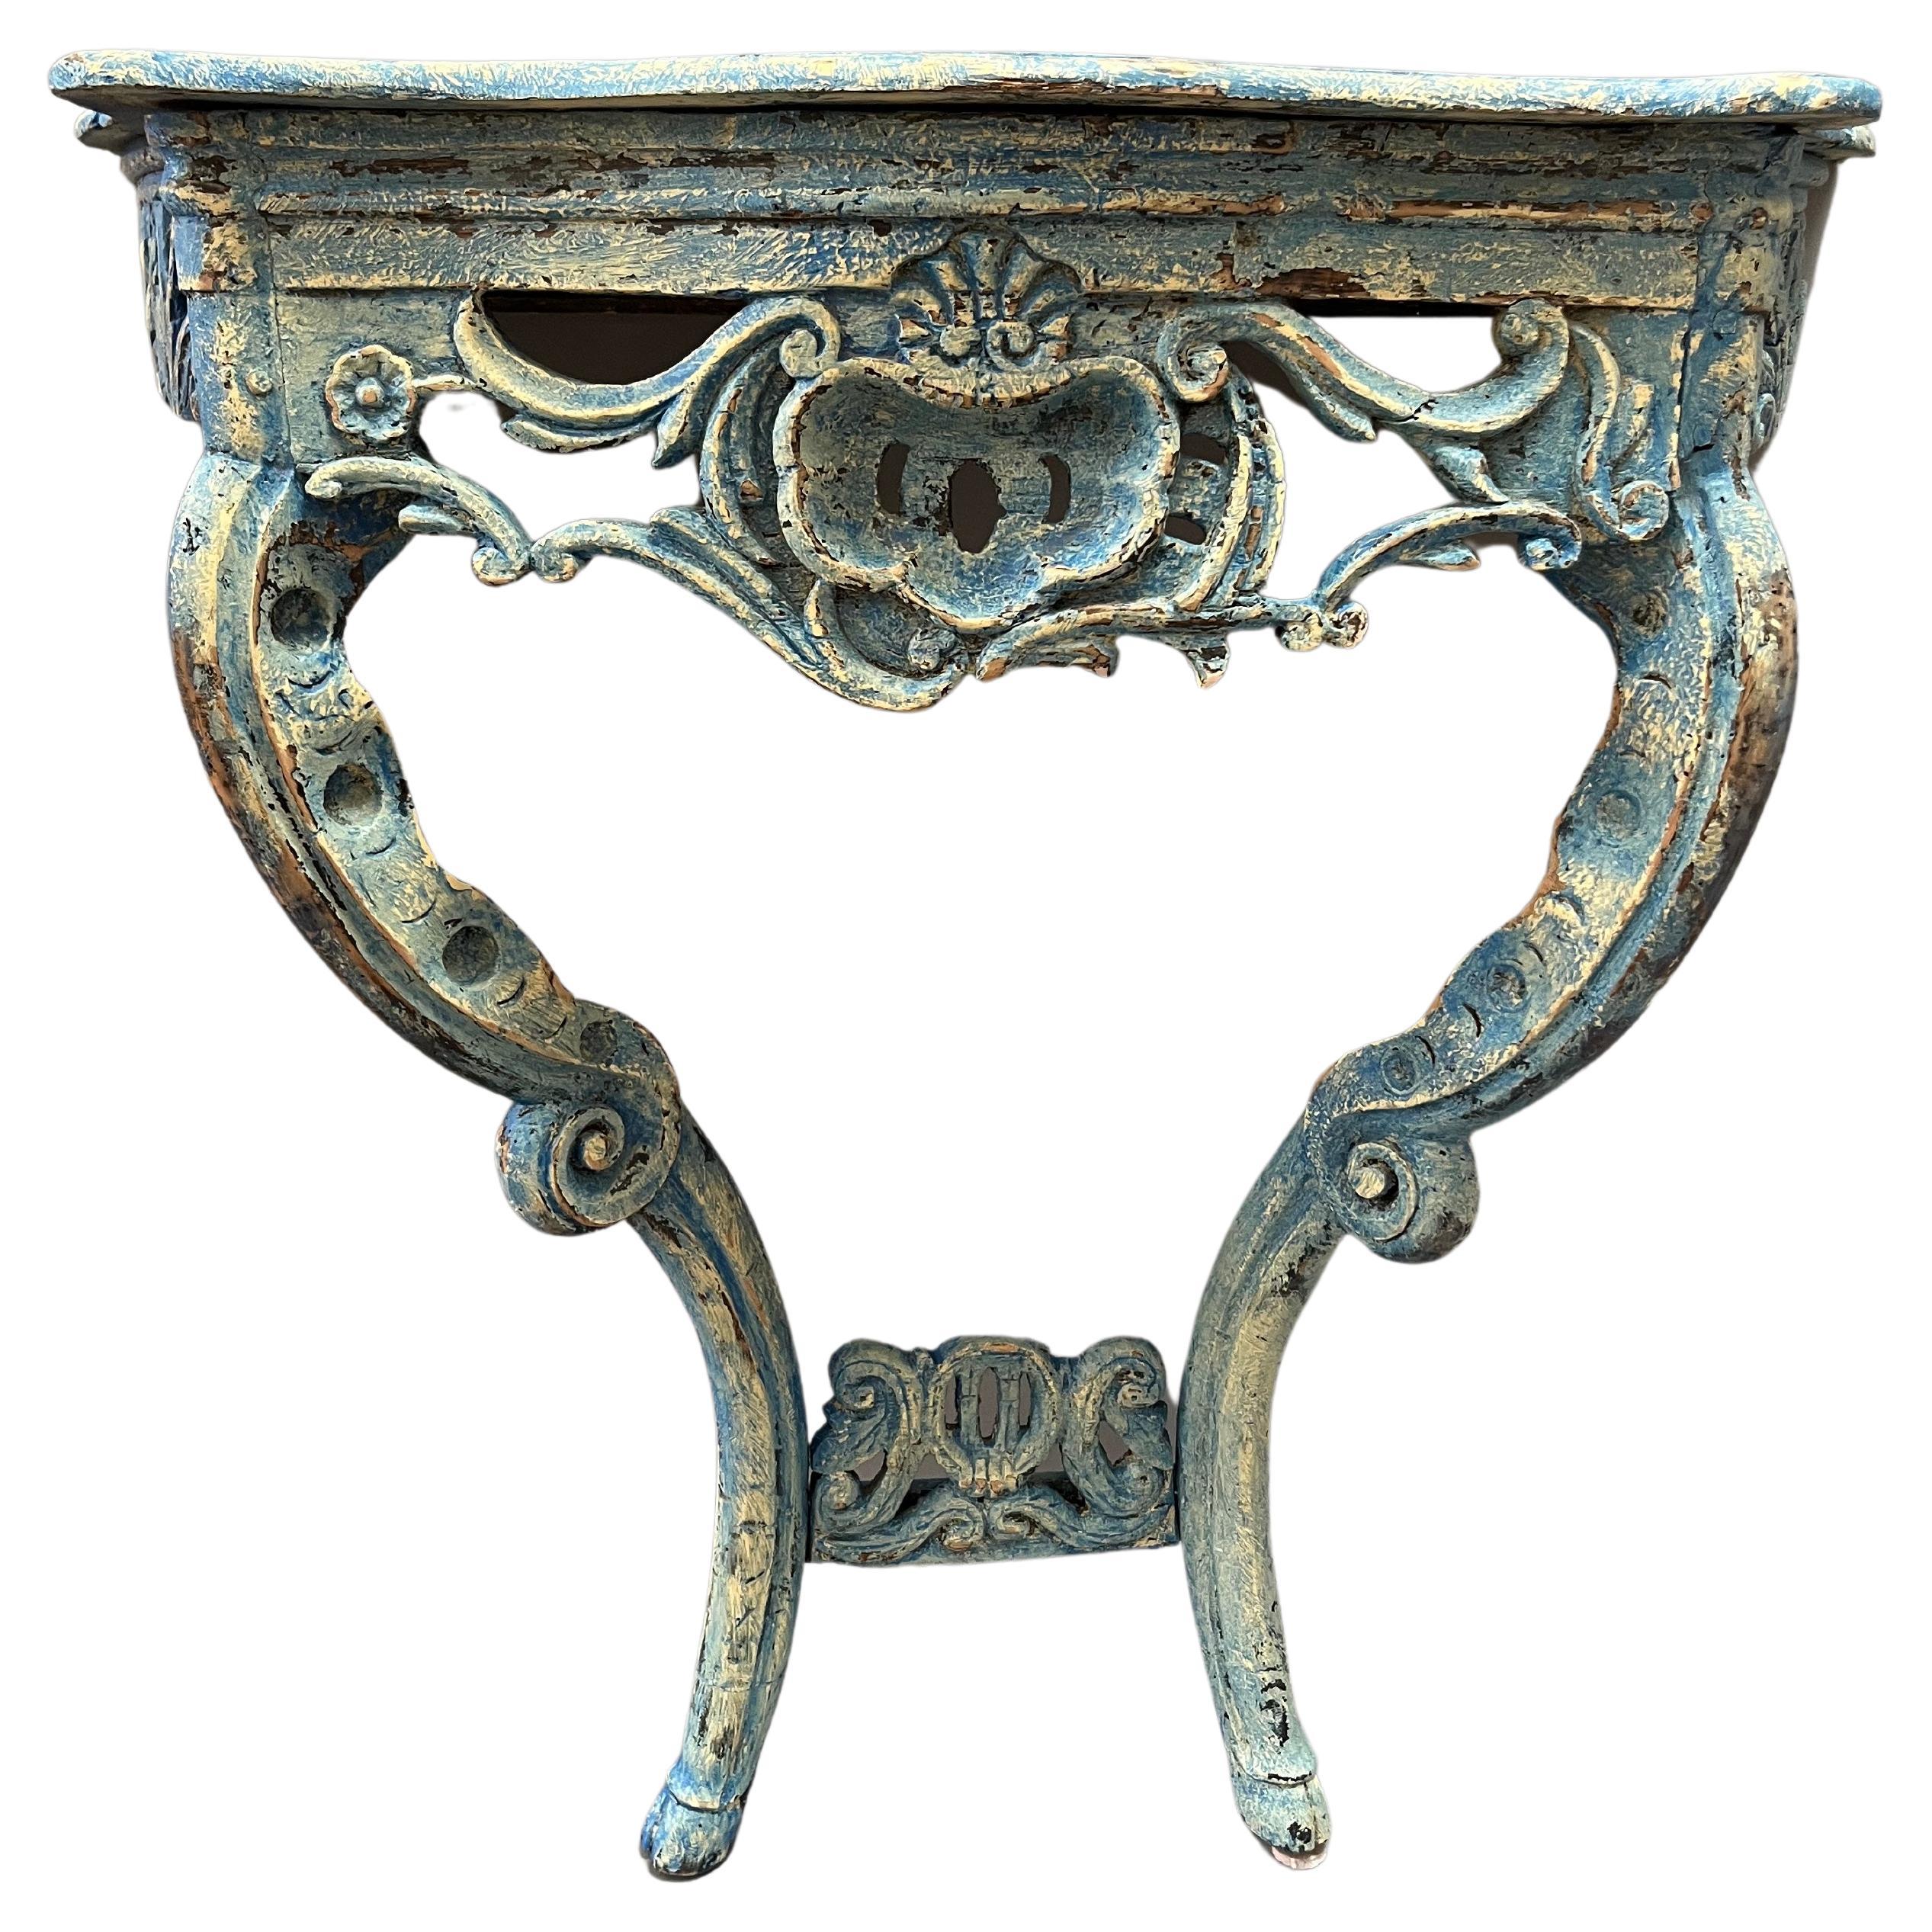 Rarissime table console provinciale française de style Régence du XVIIIe siècle